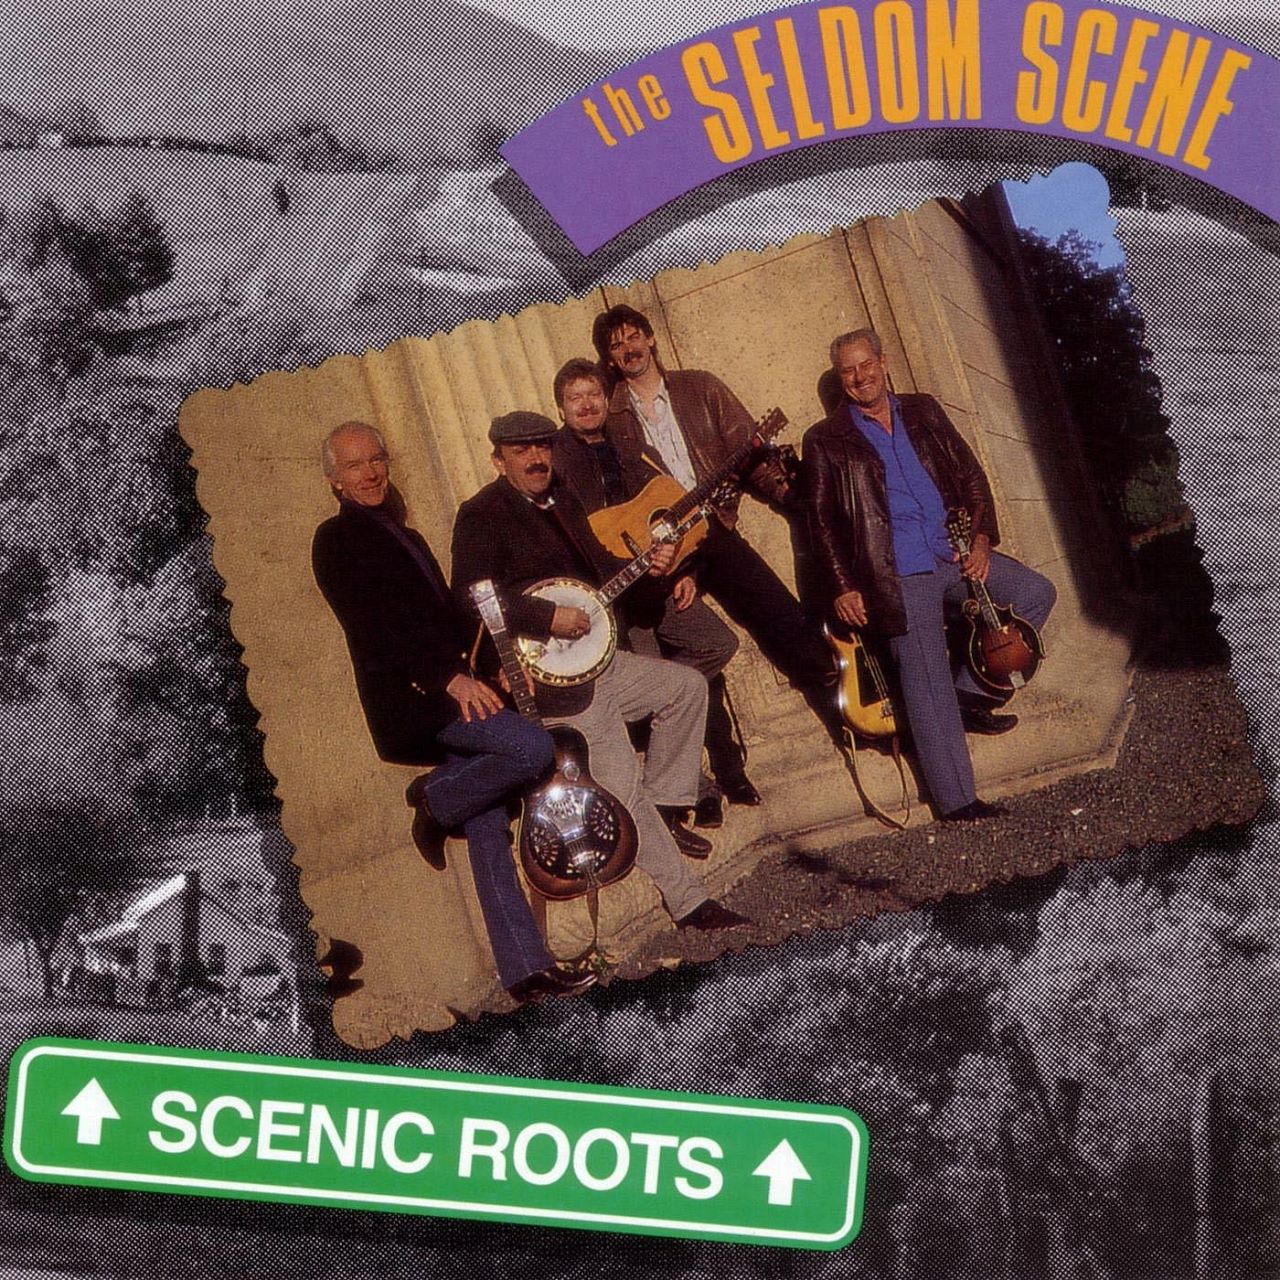 Seldom Scene – Scenic Roots cover album